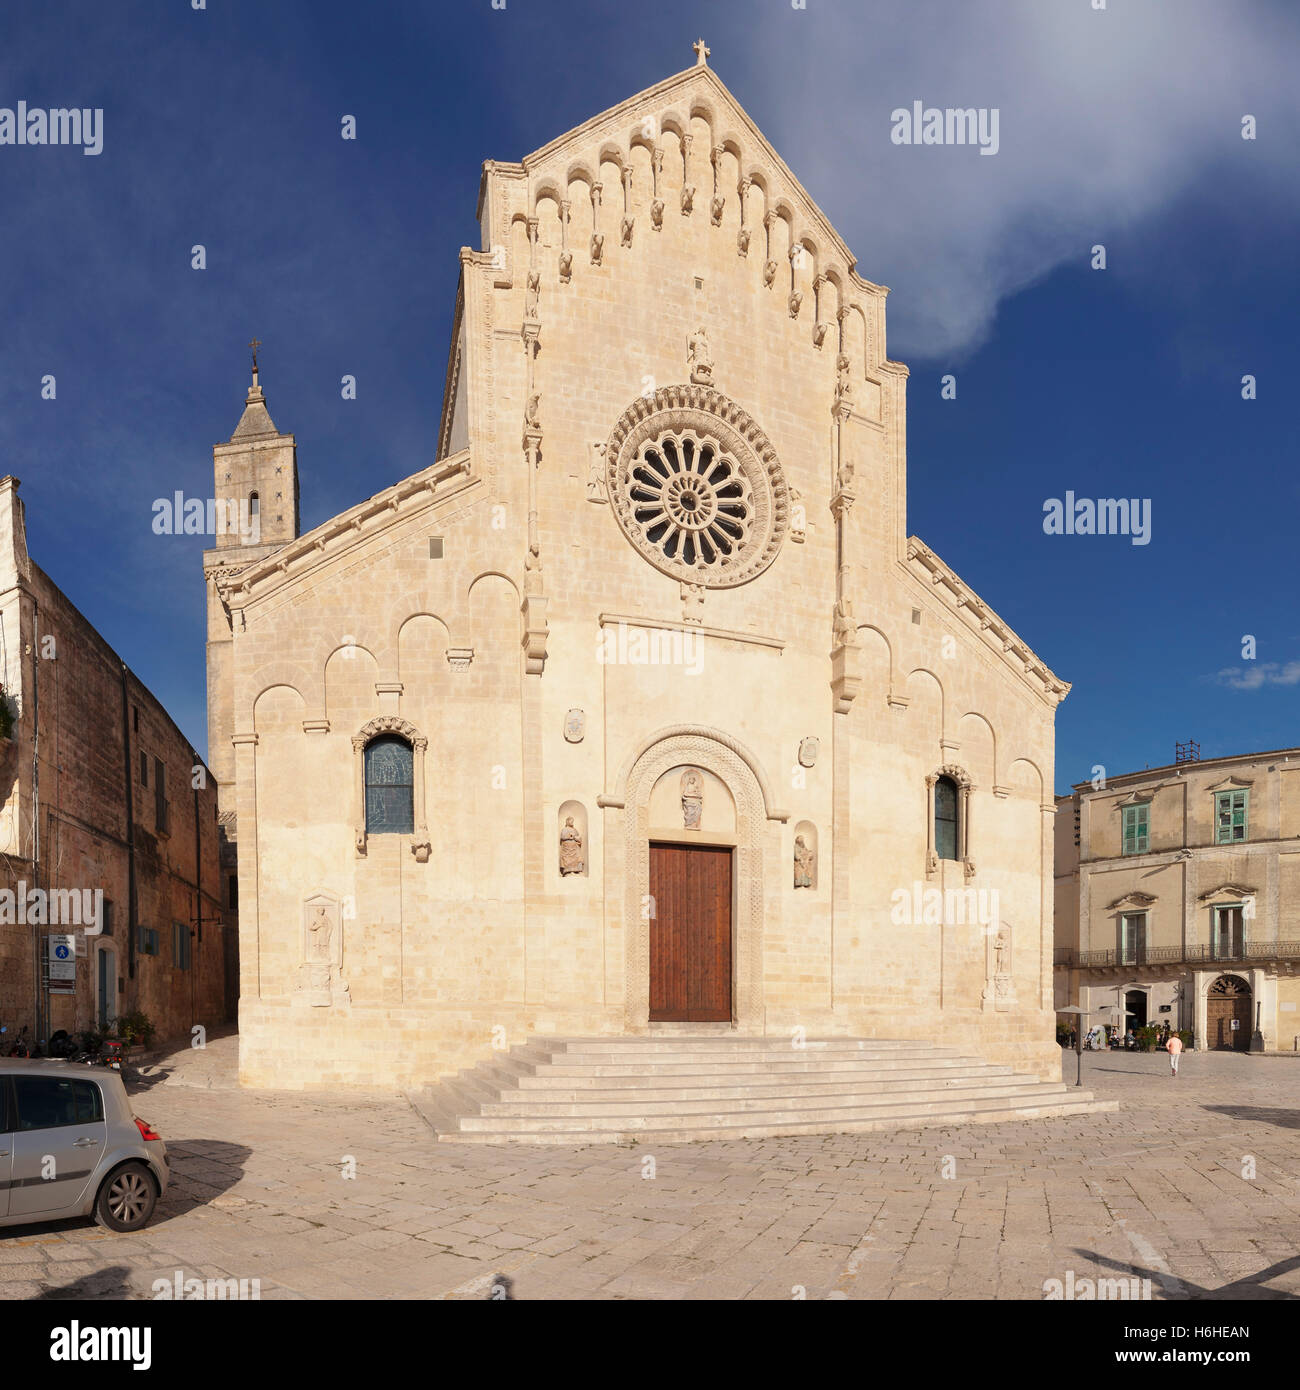 Cathedral at Piazza Duomo, Matera, Basilicata, Apulia, Italy Stock Photo